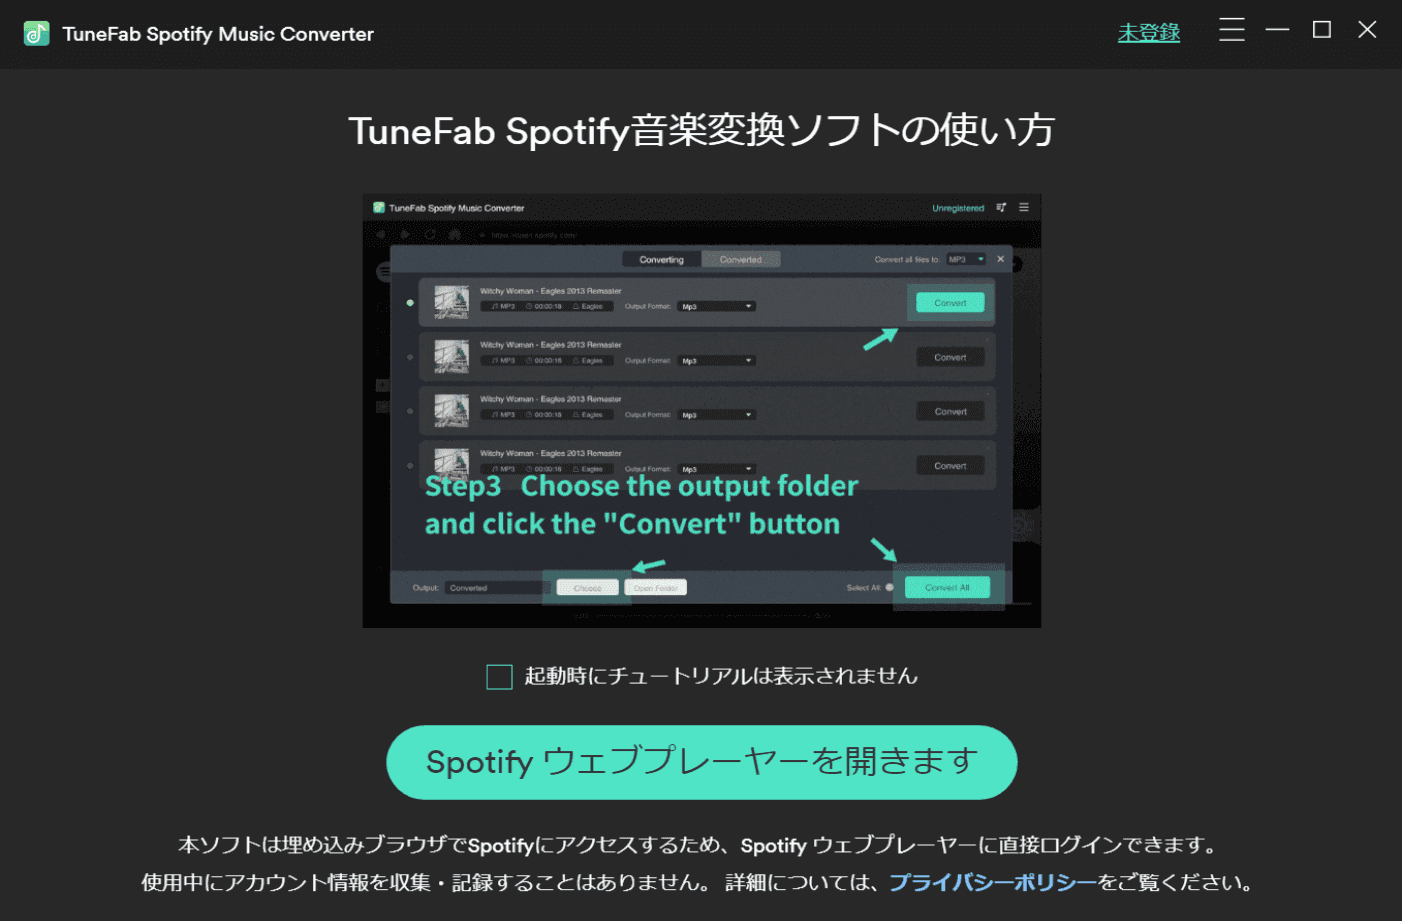 TuneFab Spotify音楽変換ソフトを起動します